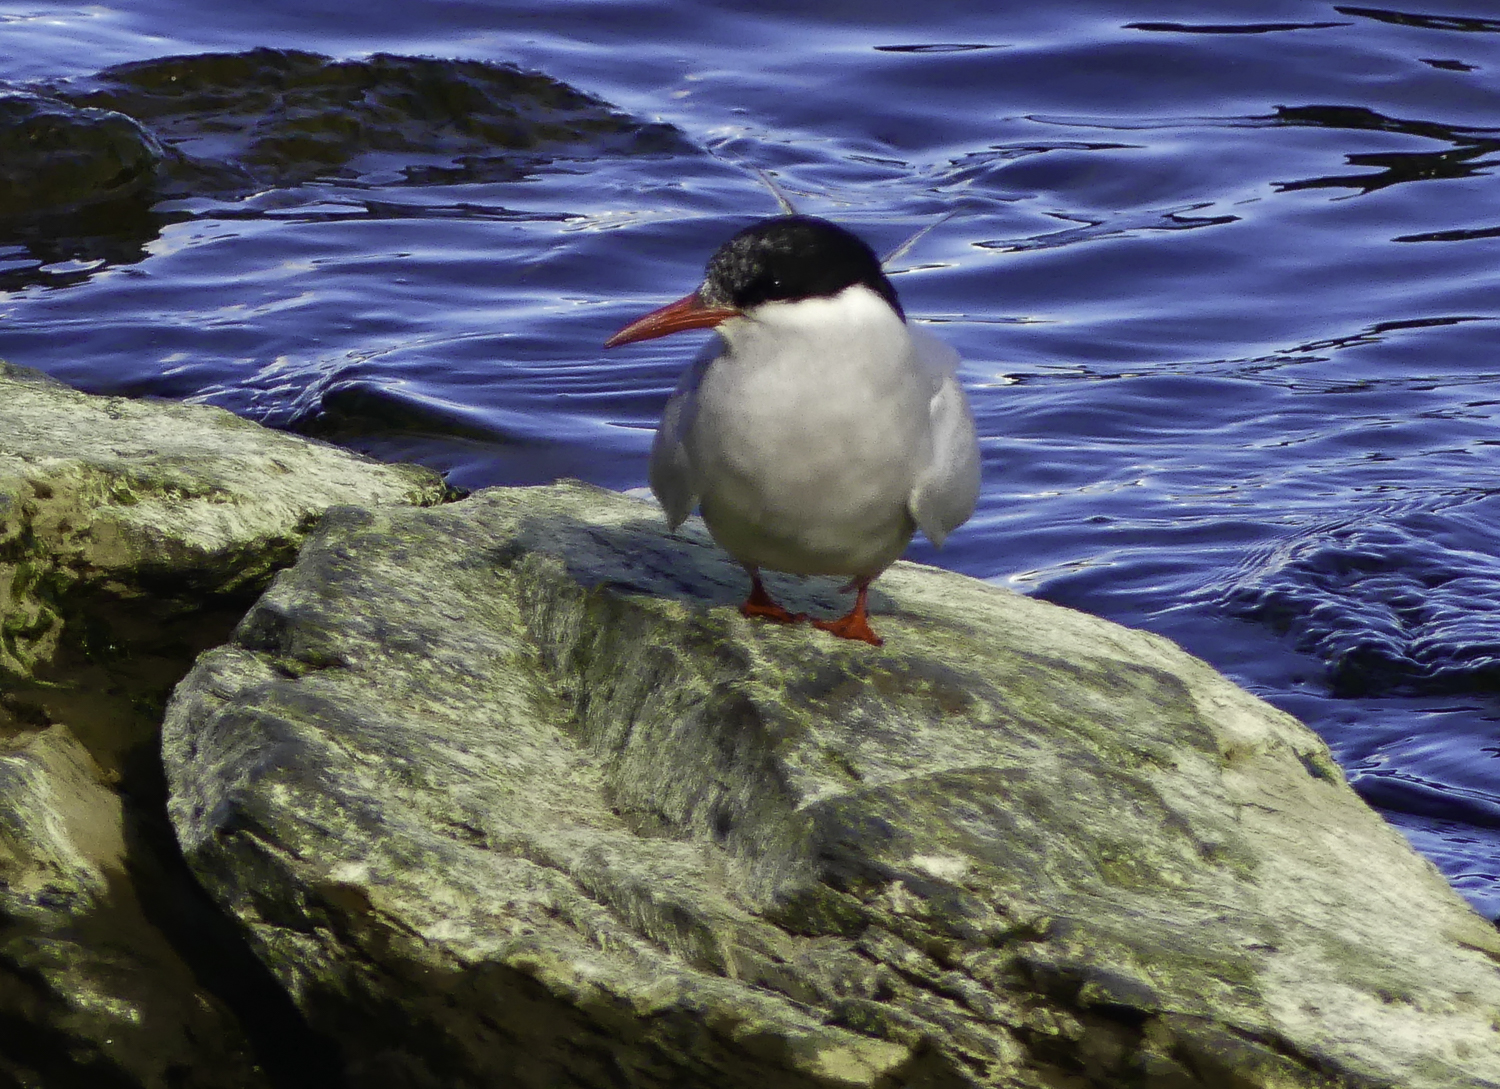 ePostcard #65: Tern, Tern Tern!